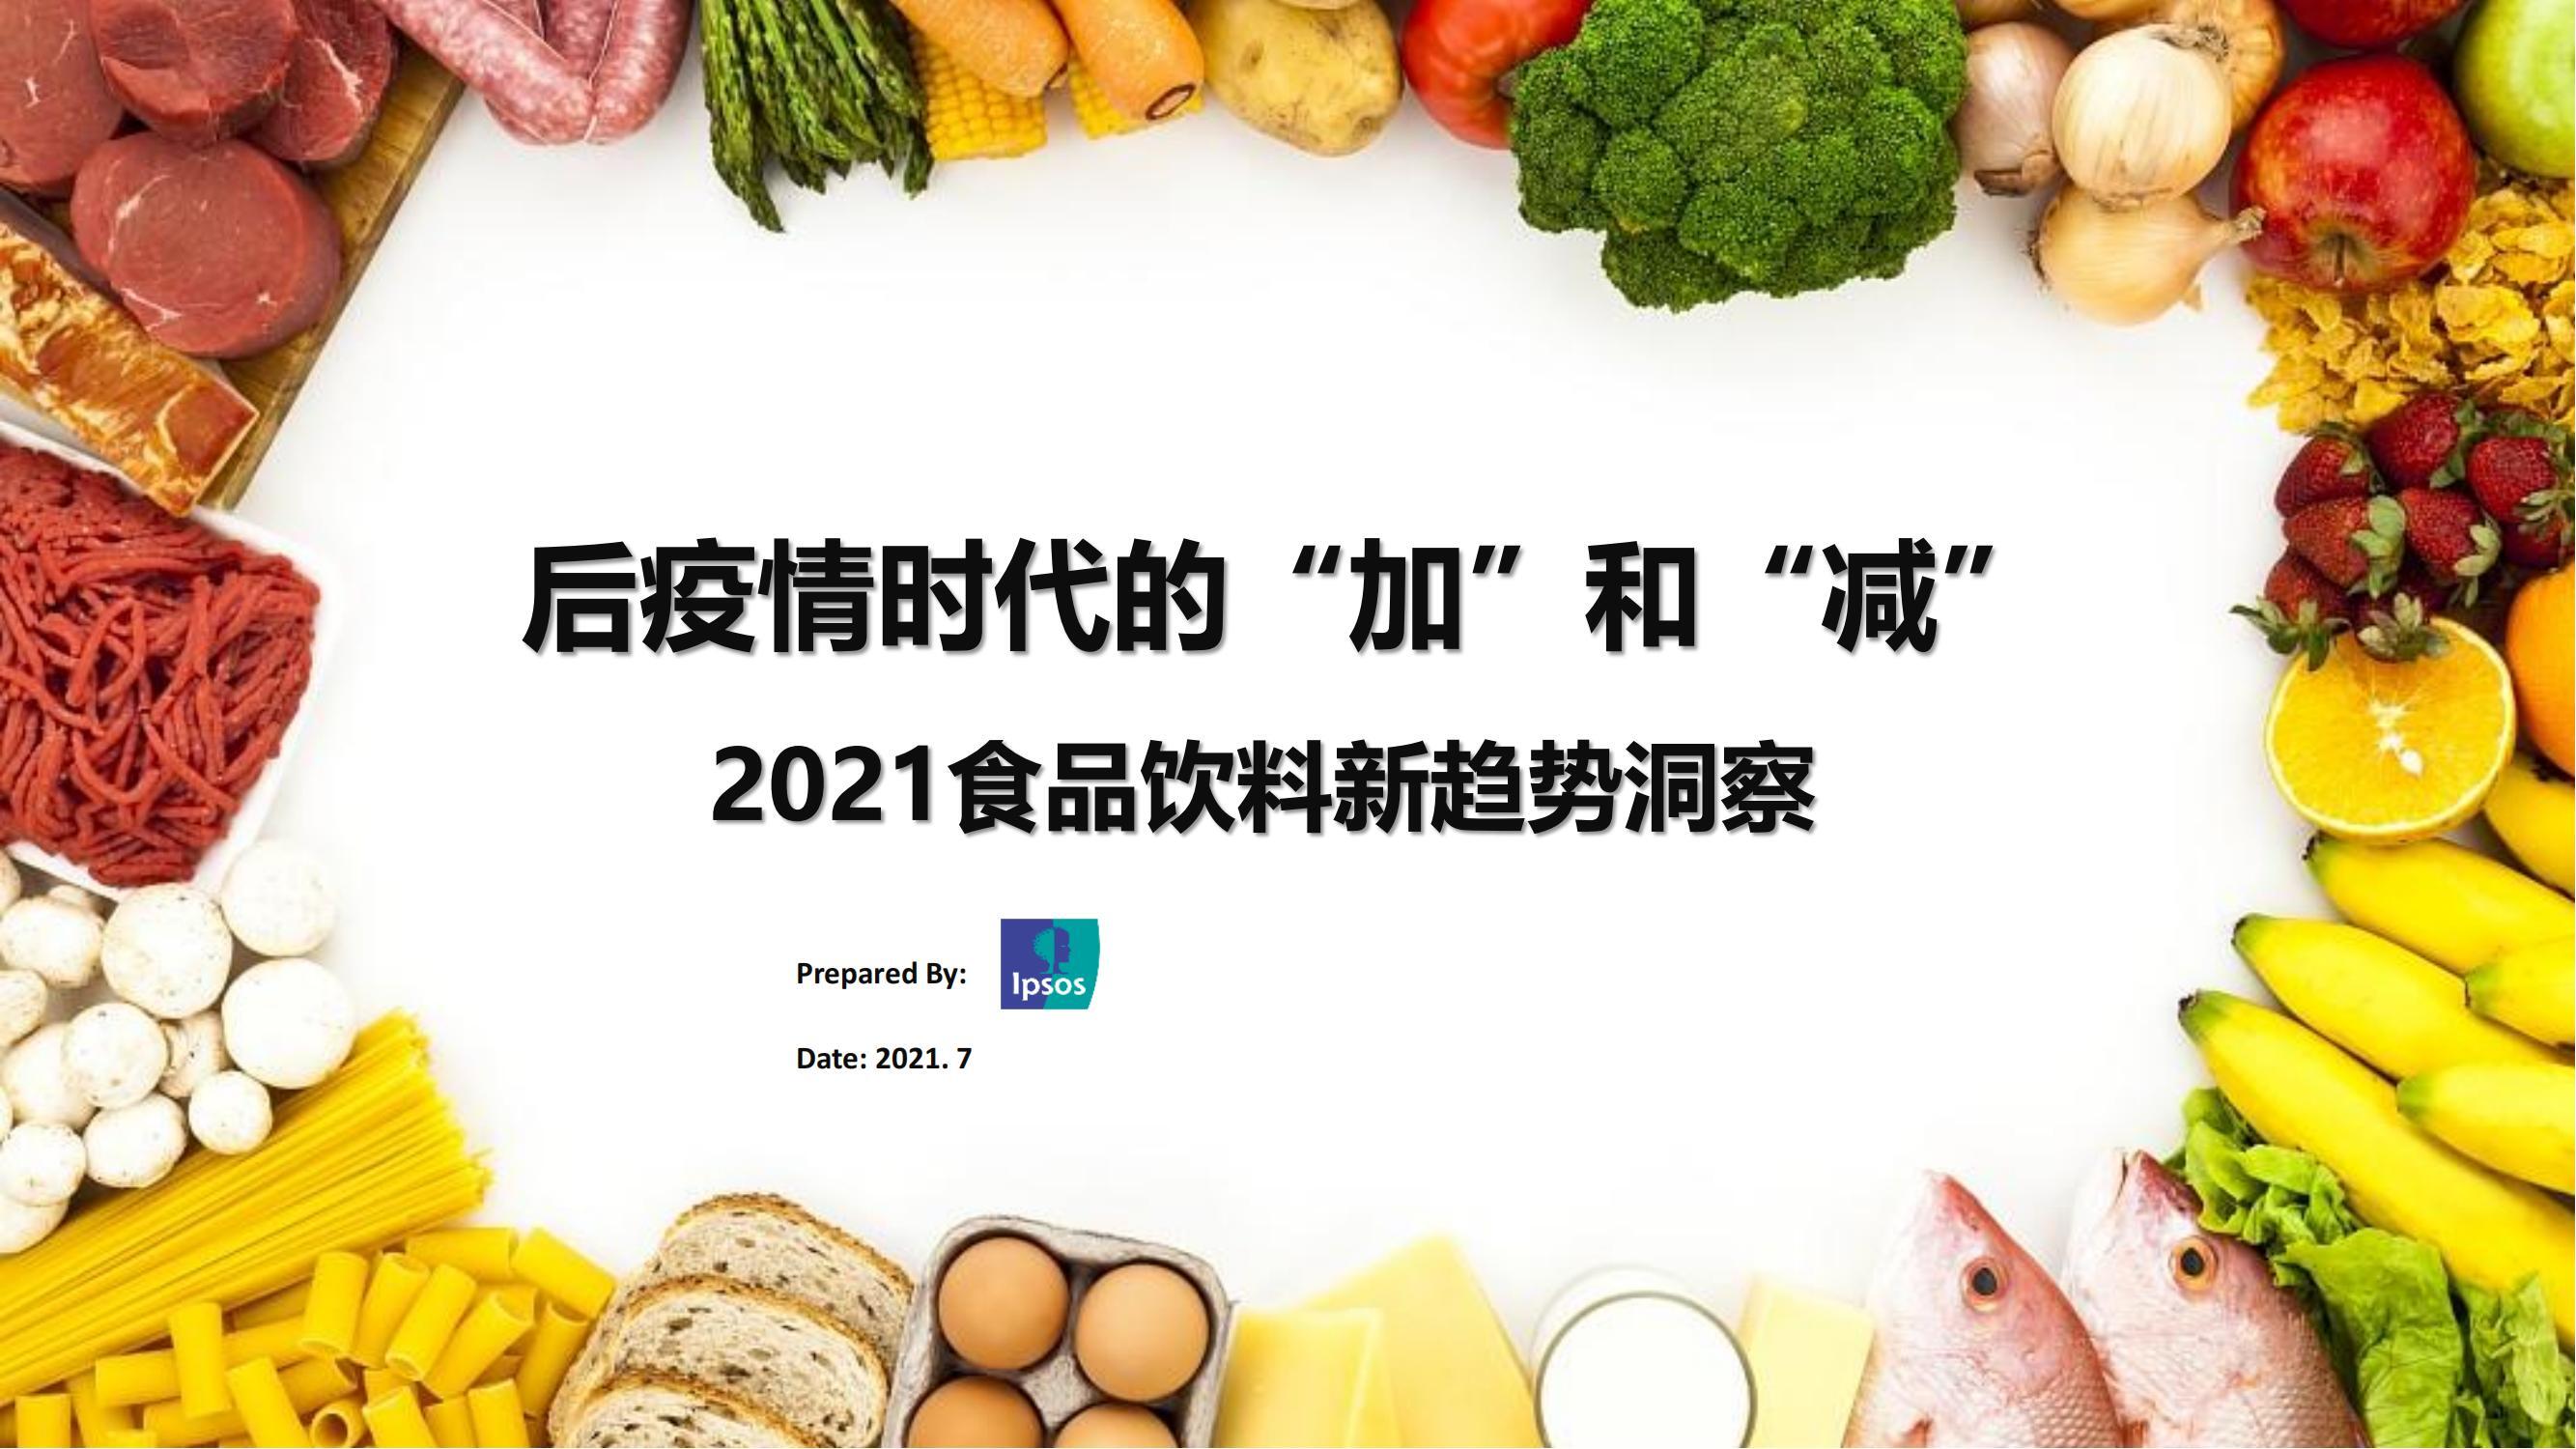 2021食品饮料新趋势洞察